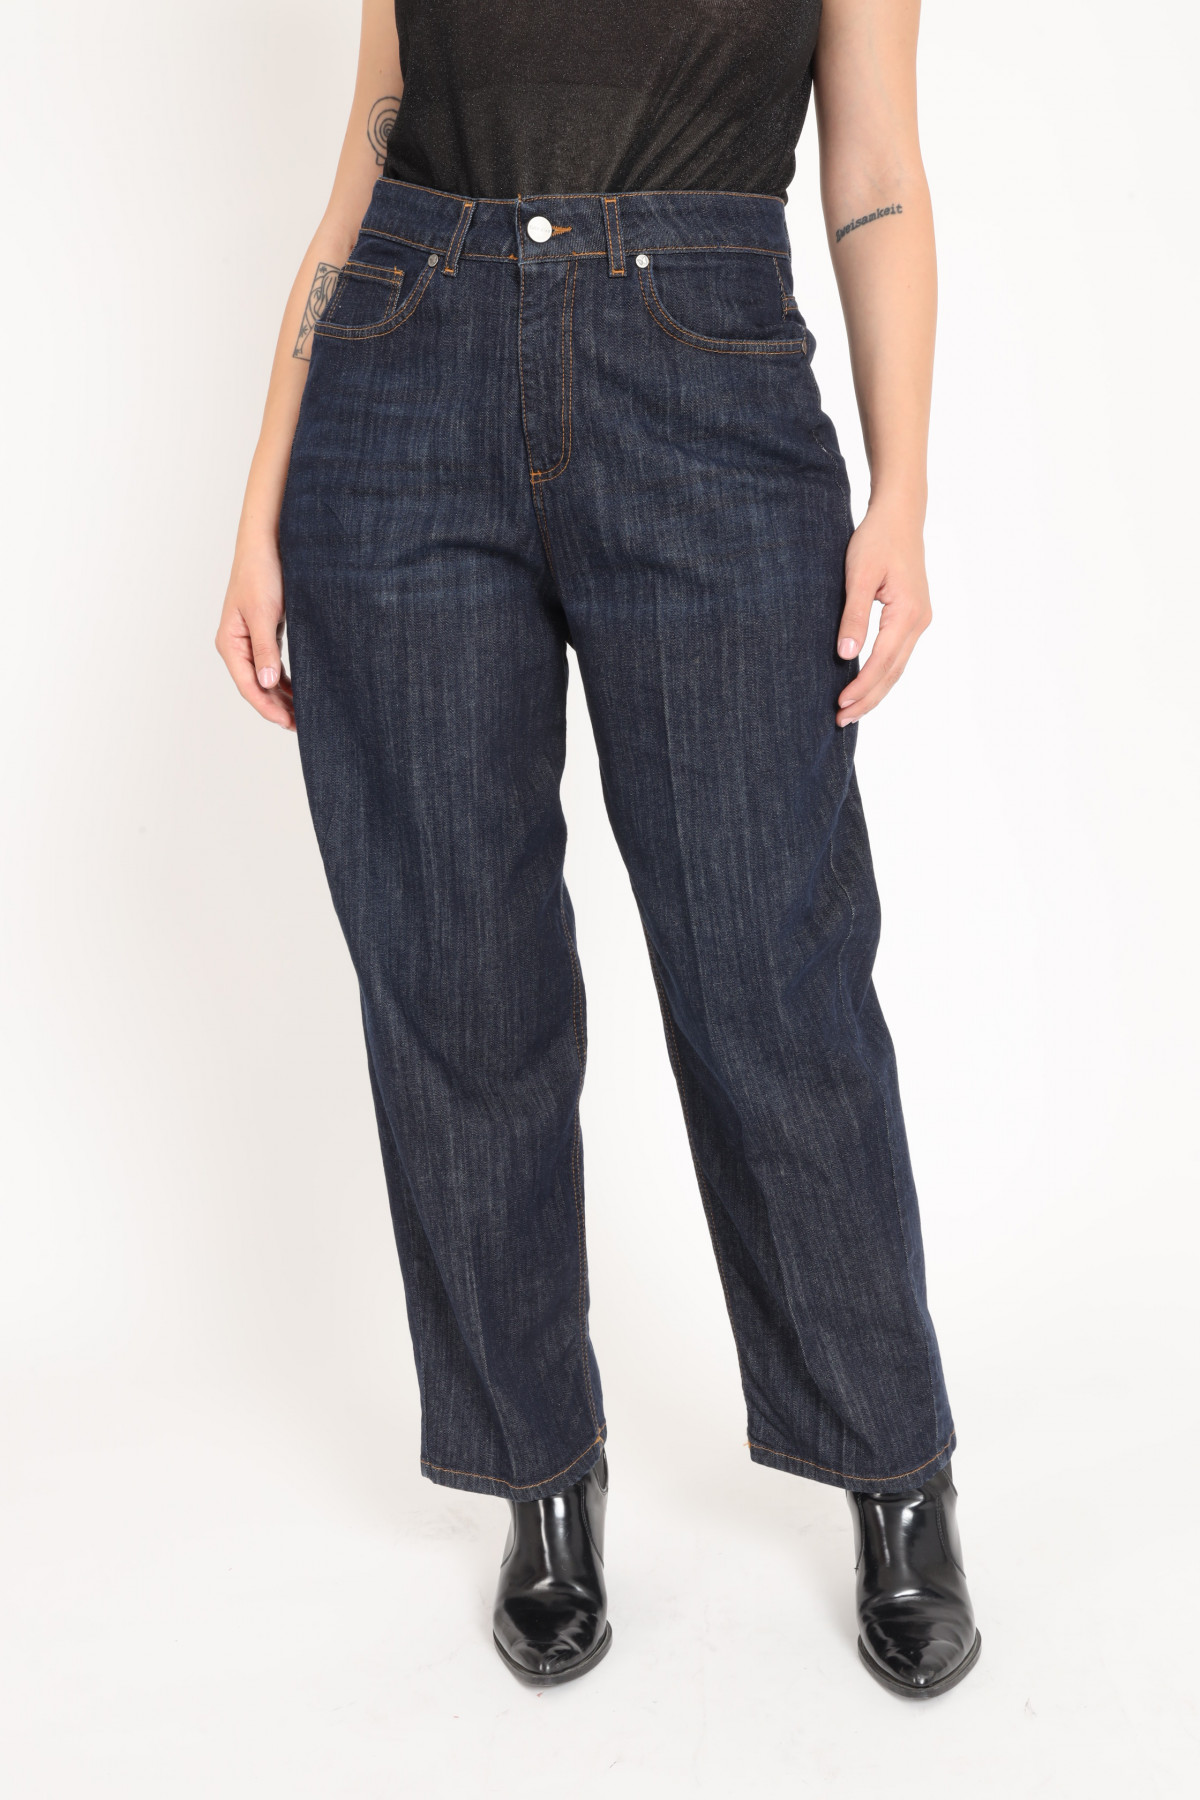 Japan 5 Pocket Jeans